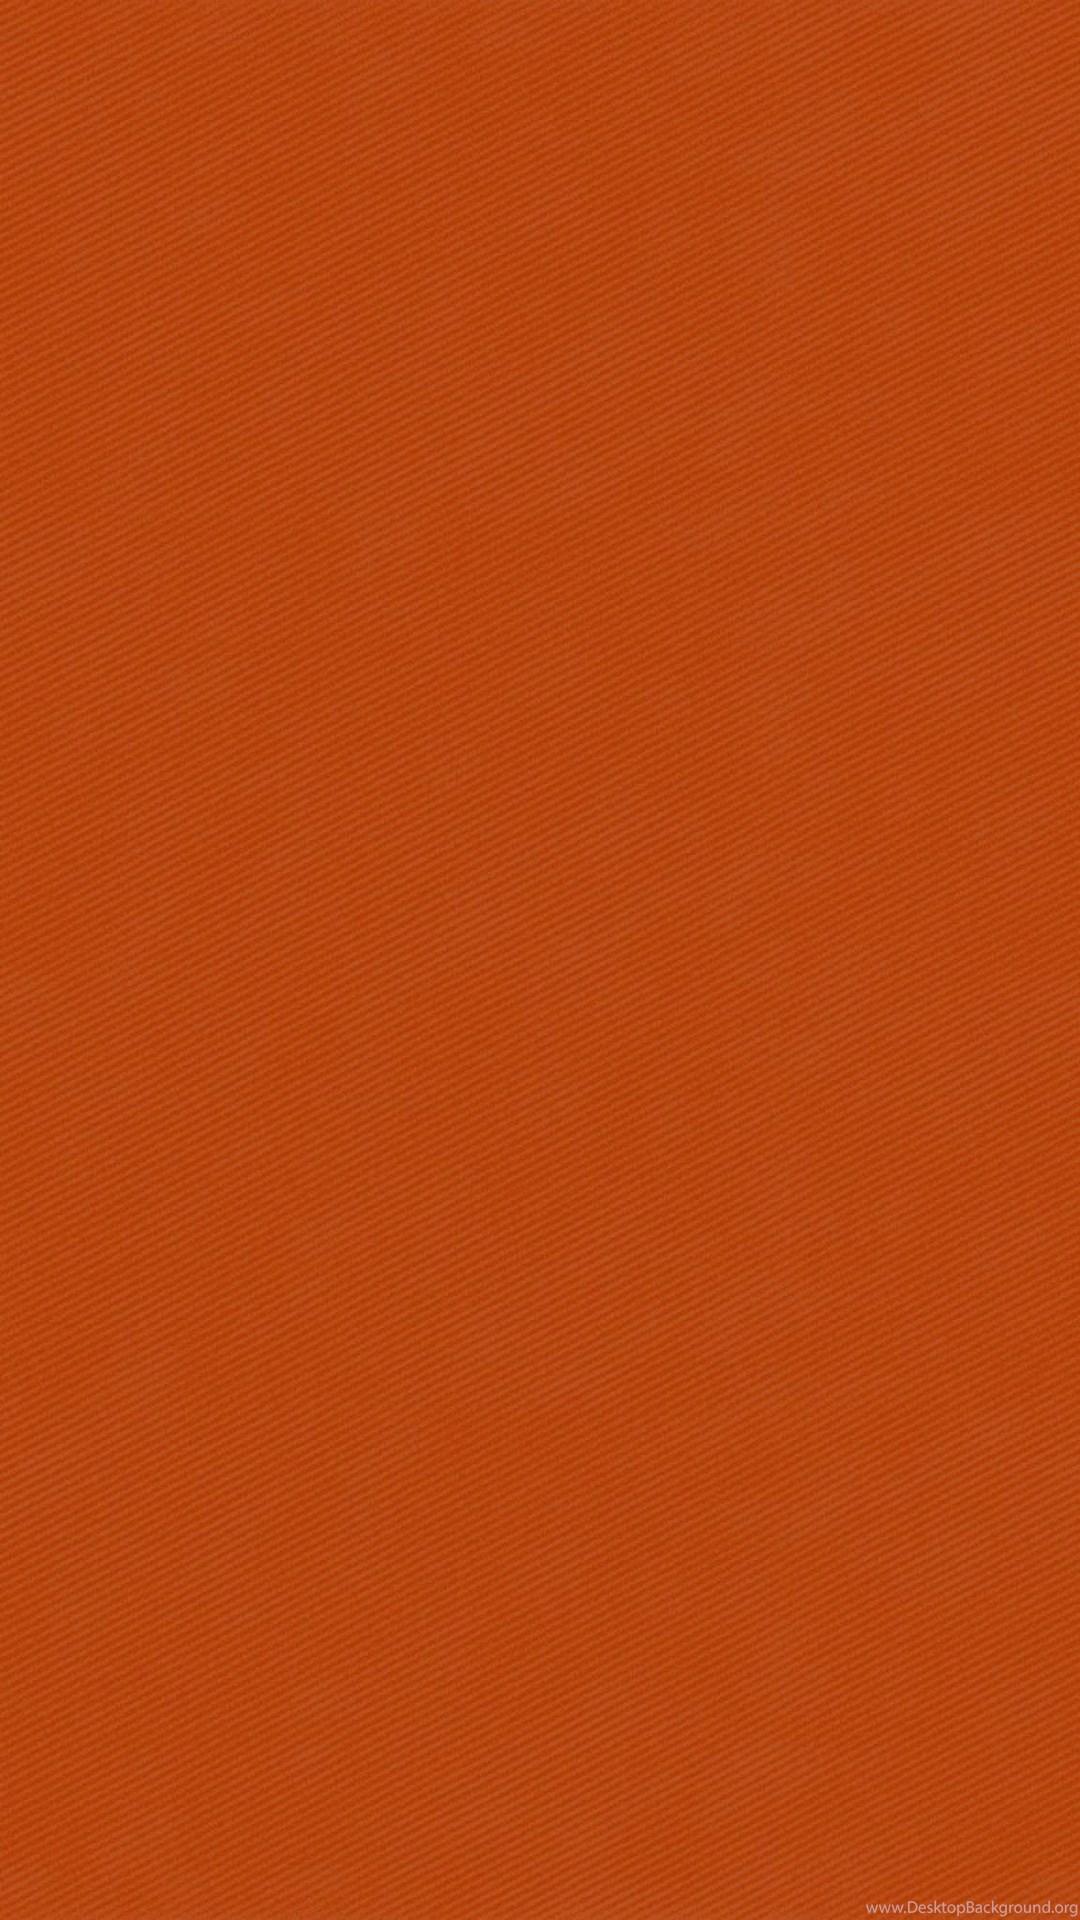 solid dark orange background